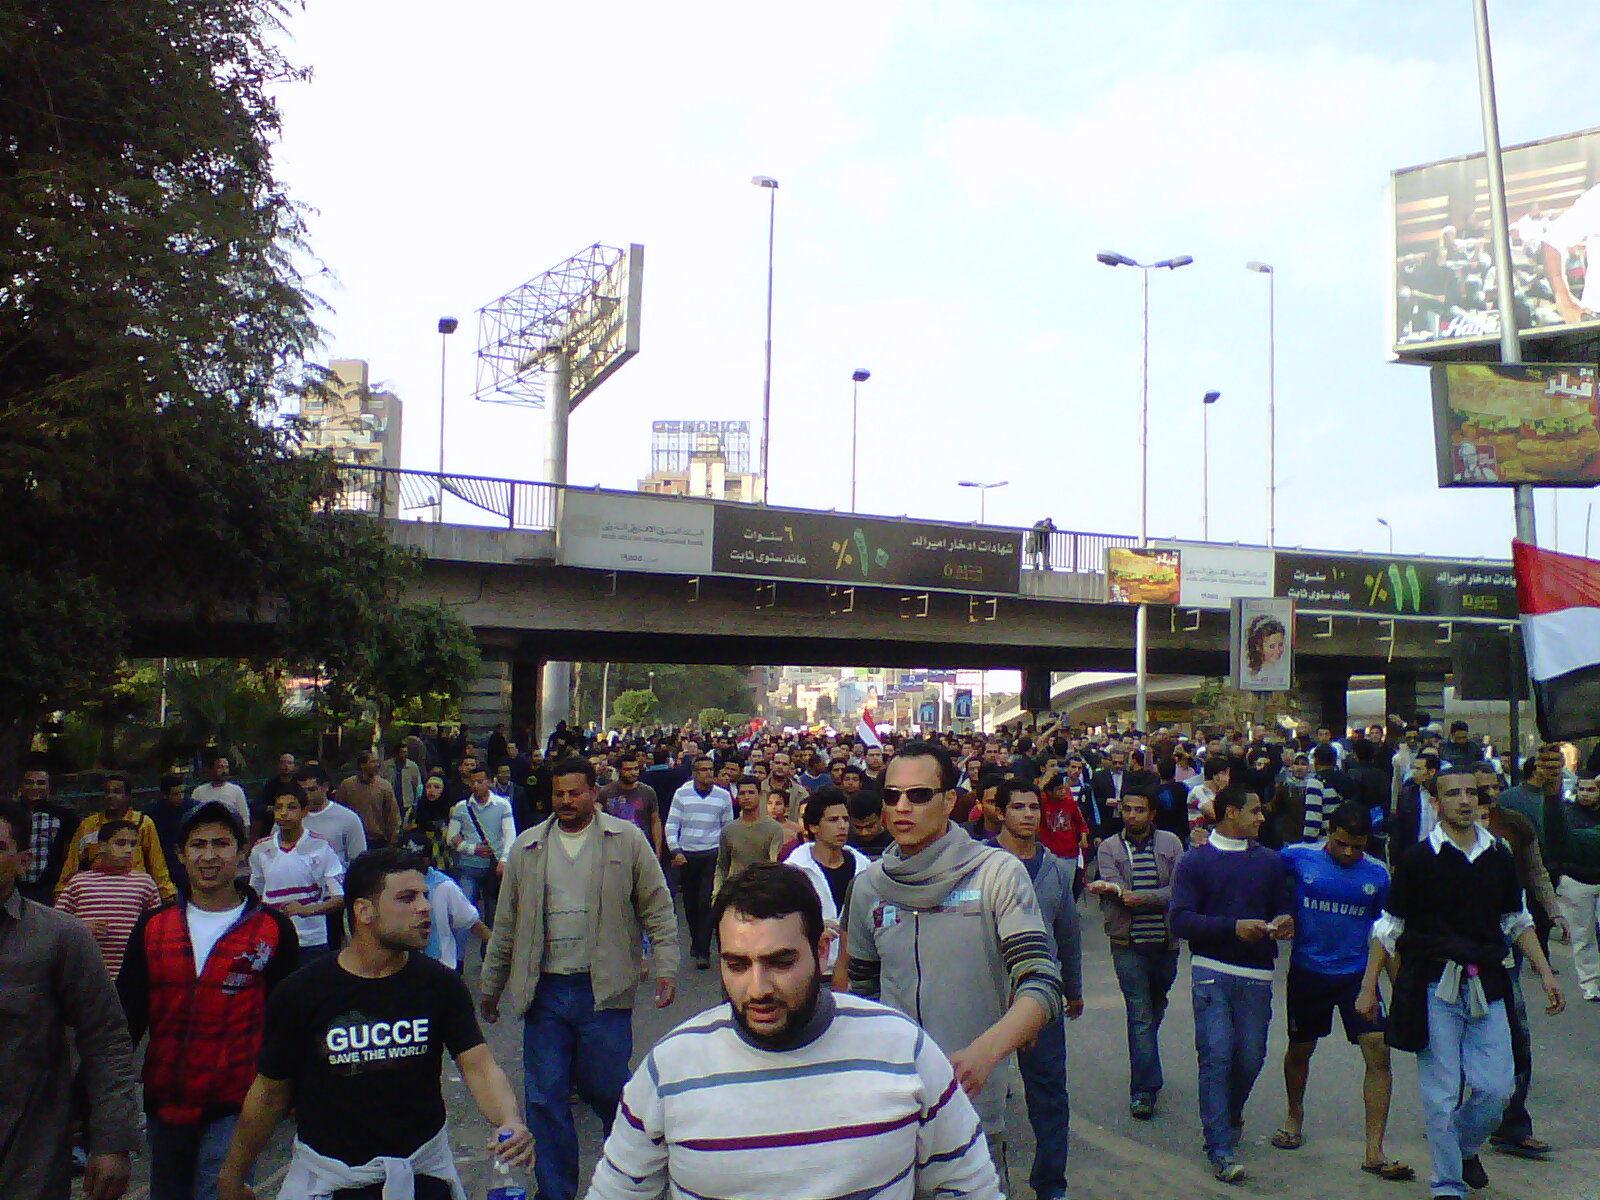 a crowd of people walking in an open area